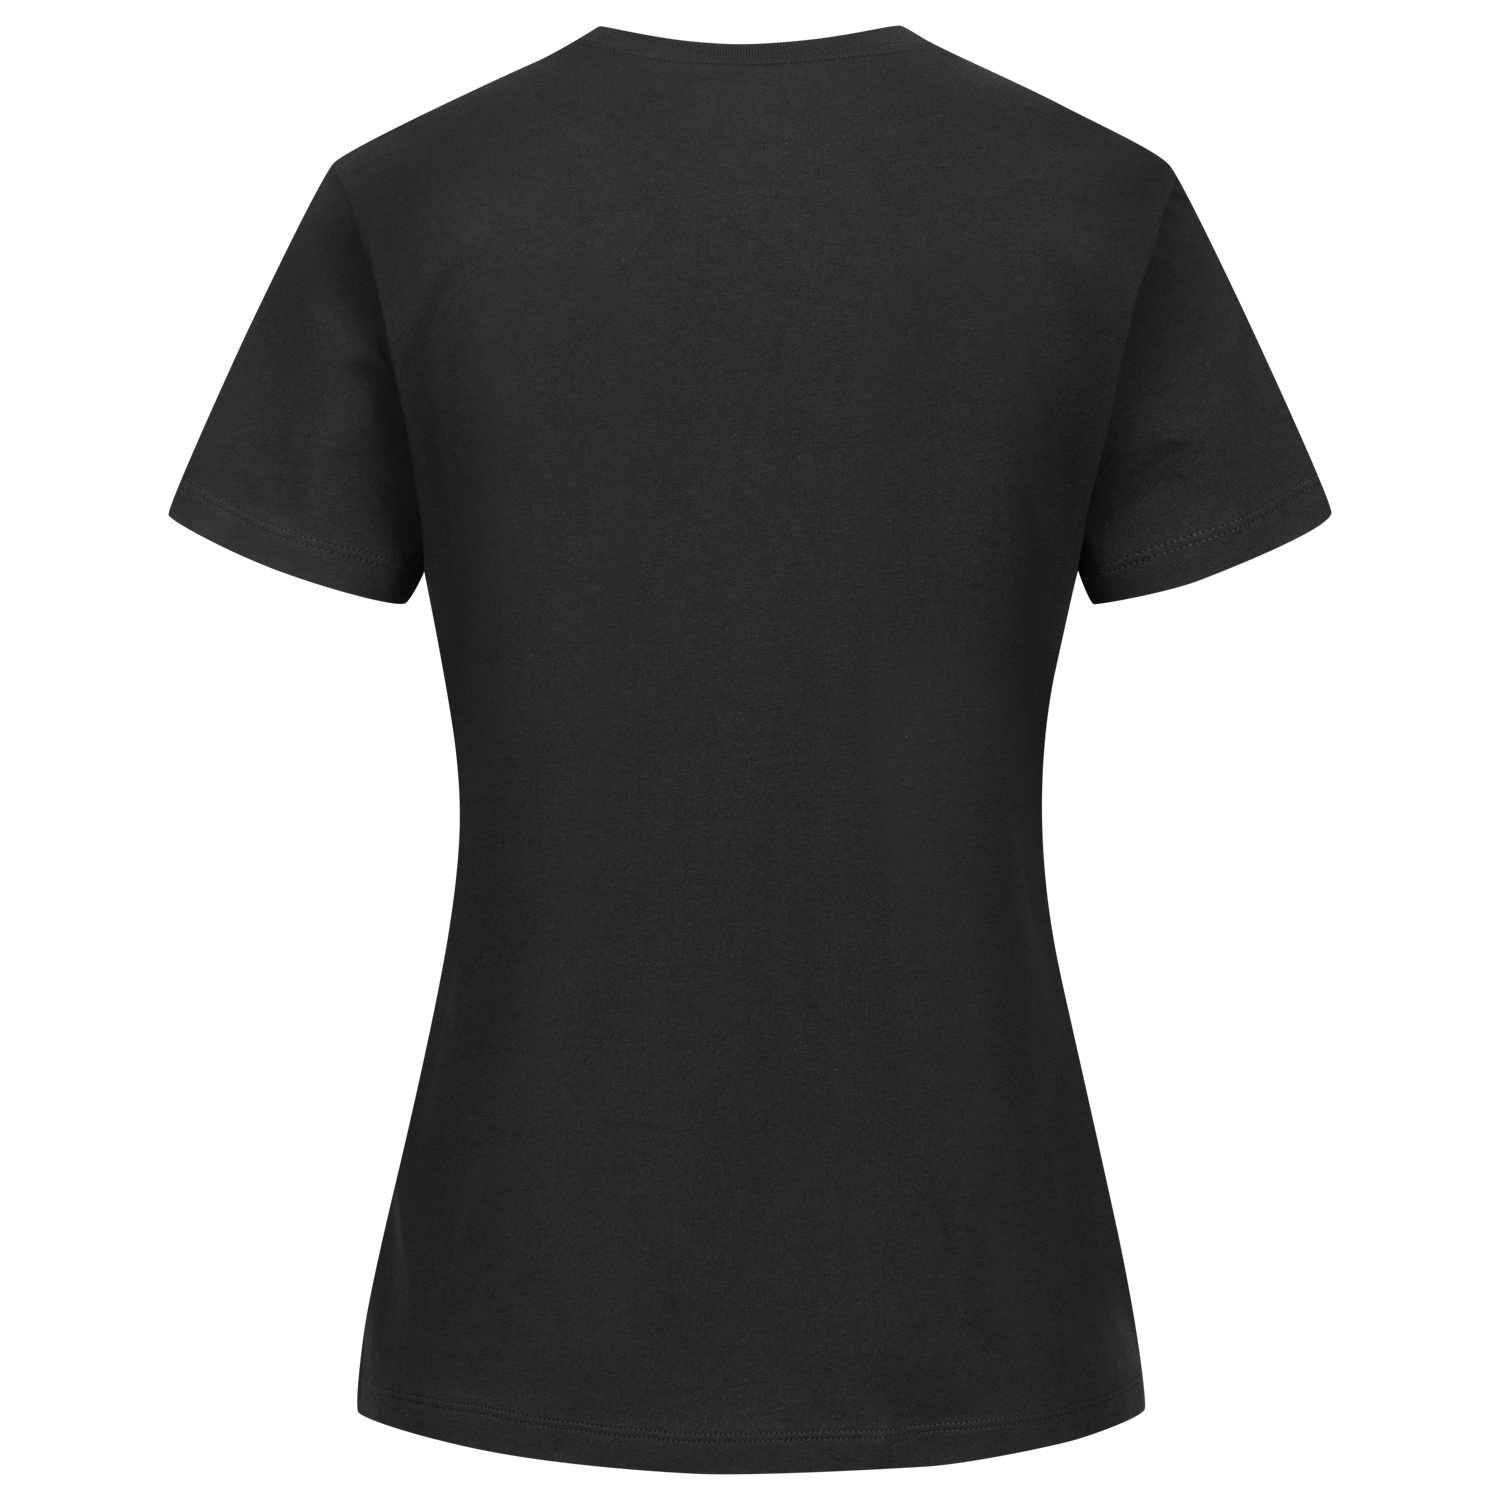 Bild 2: Nike Damen Shirt New Eighties black